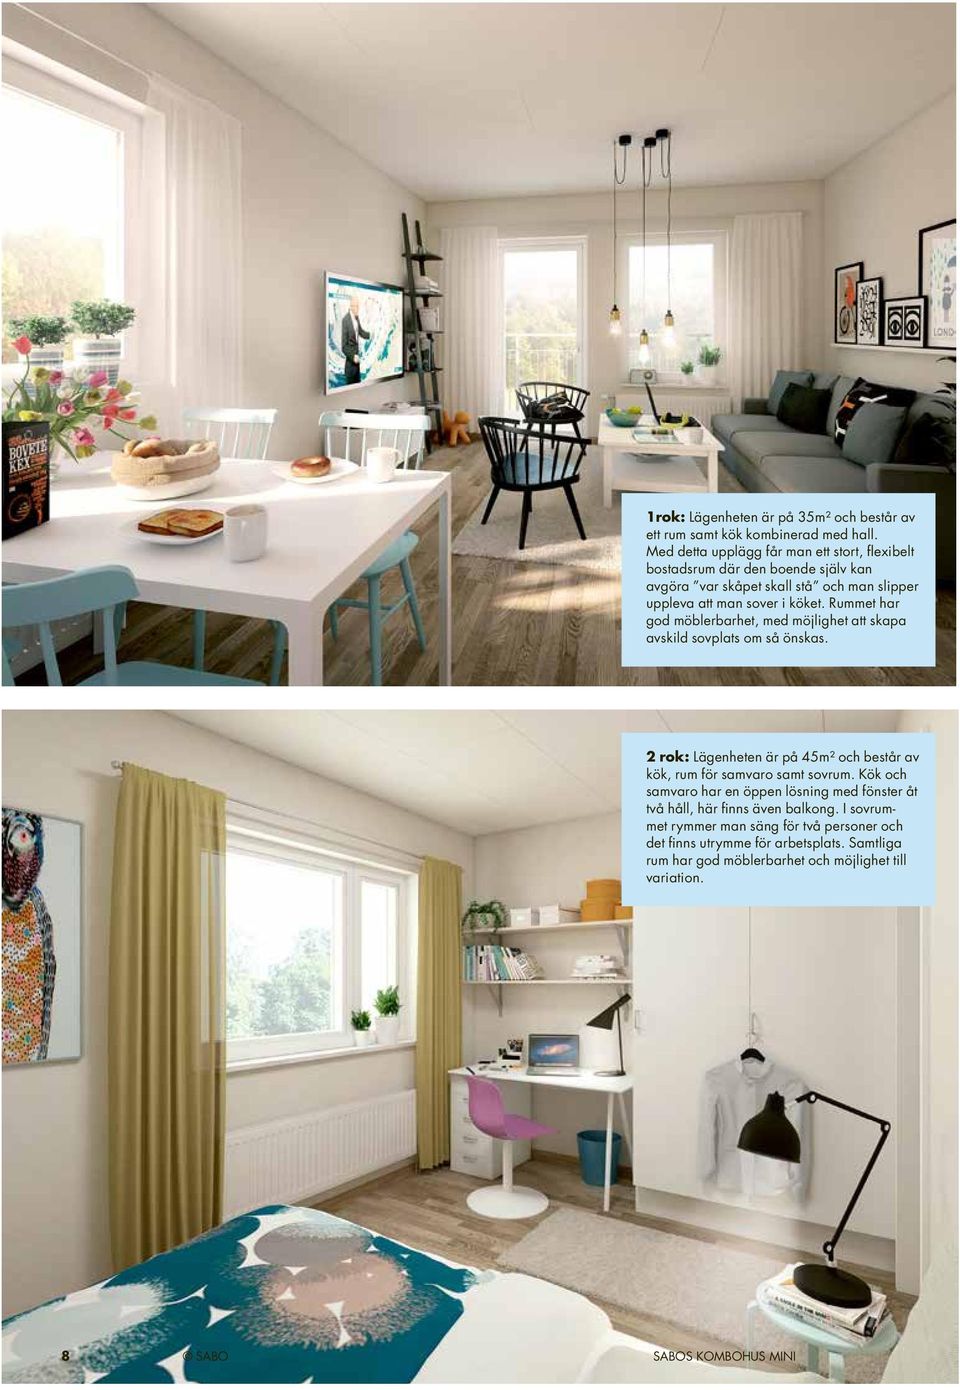 Rummet har god möblerbarhet, med möjlighet att skapa avskild sovplats om så önskas. 2 rok: Lägenheten är på 45m² och består av kök, rum för samvaro samt sovrum.